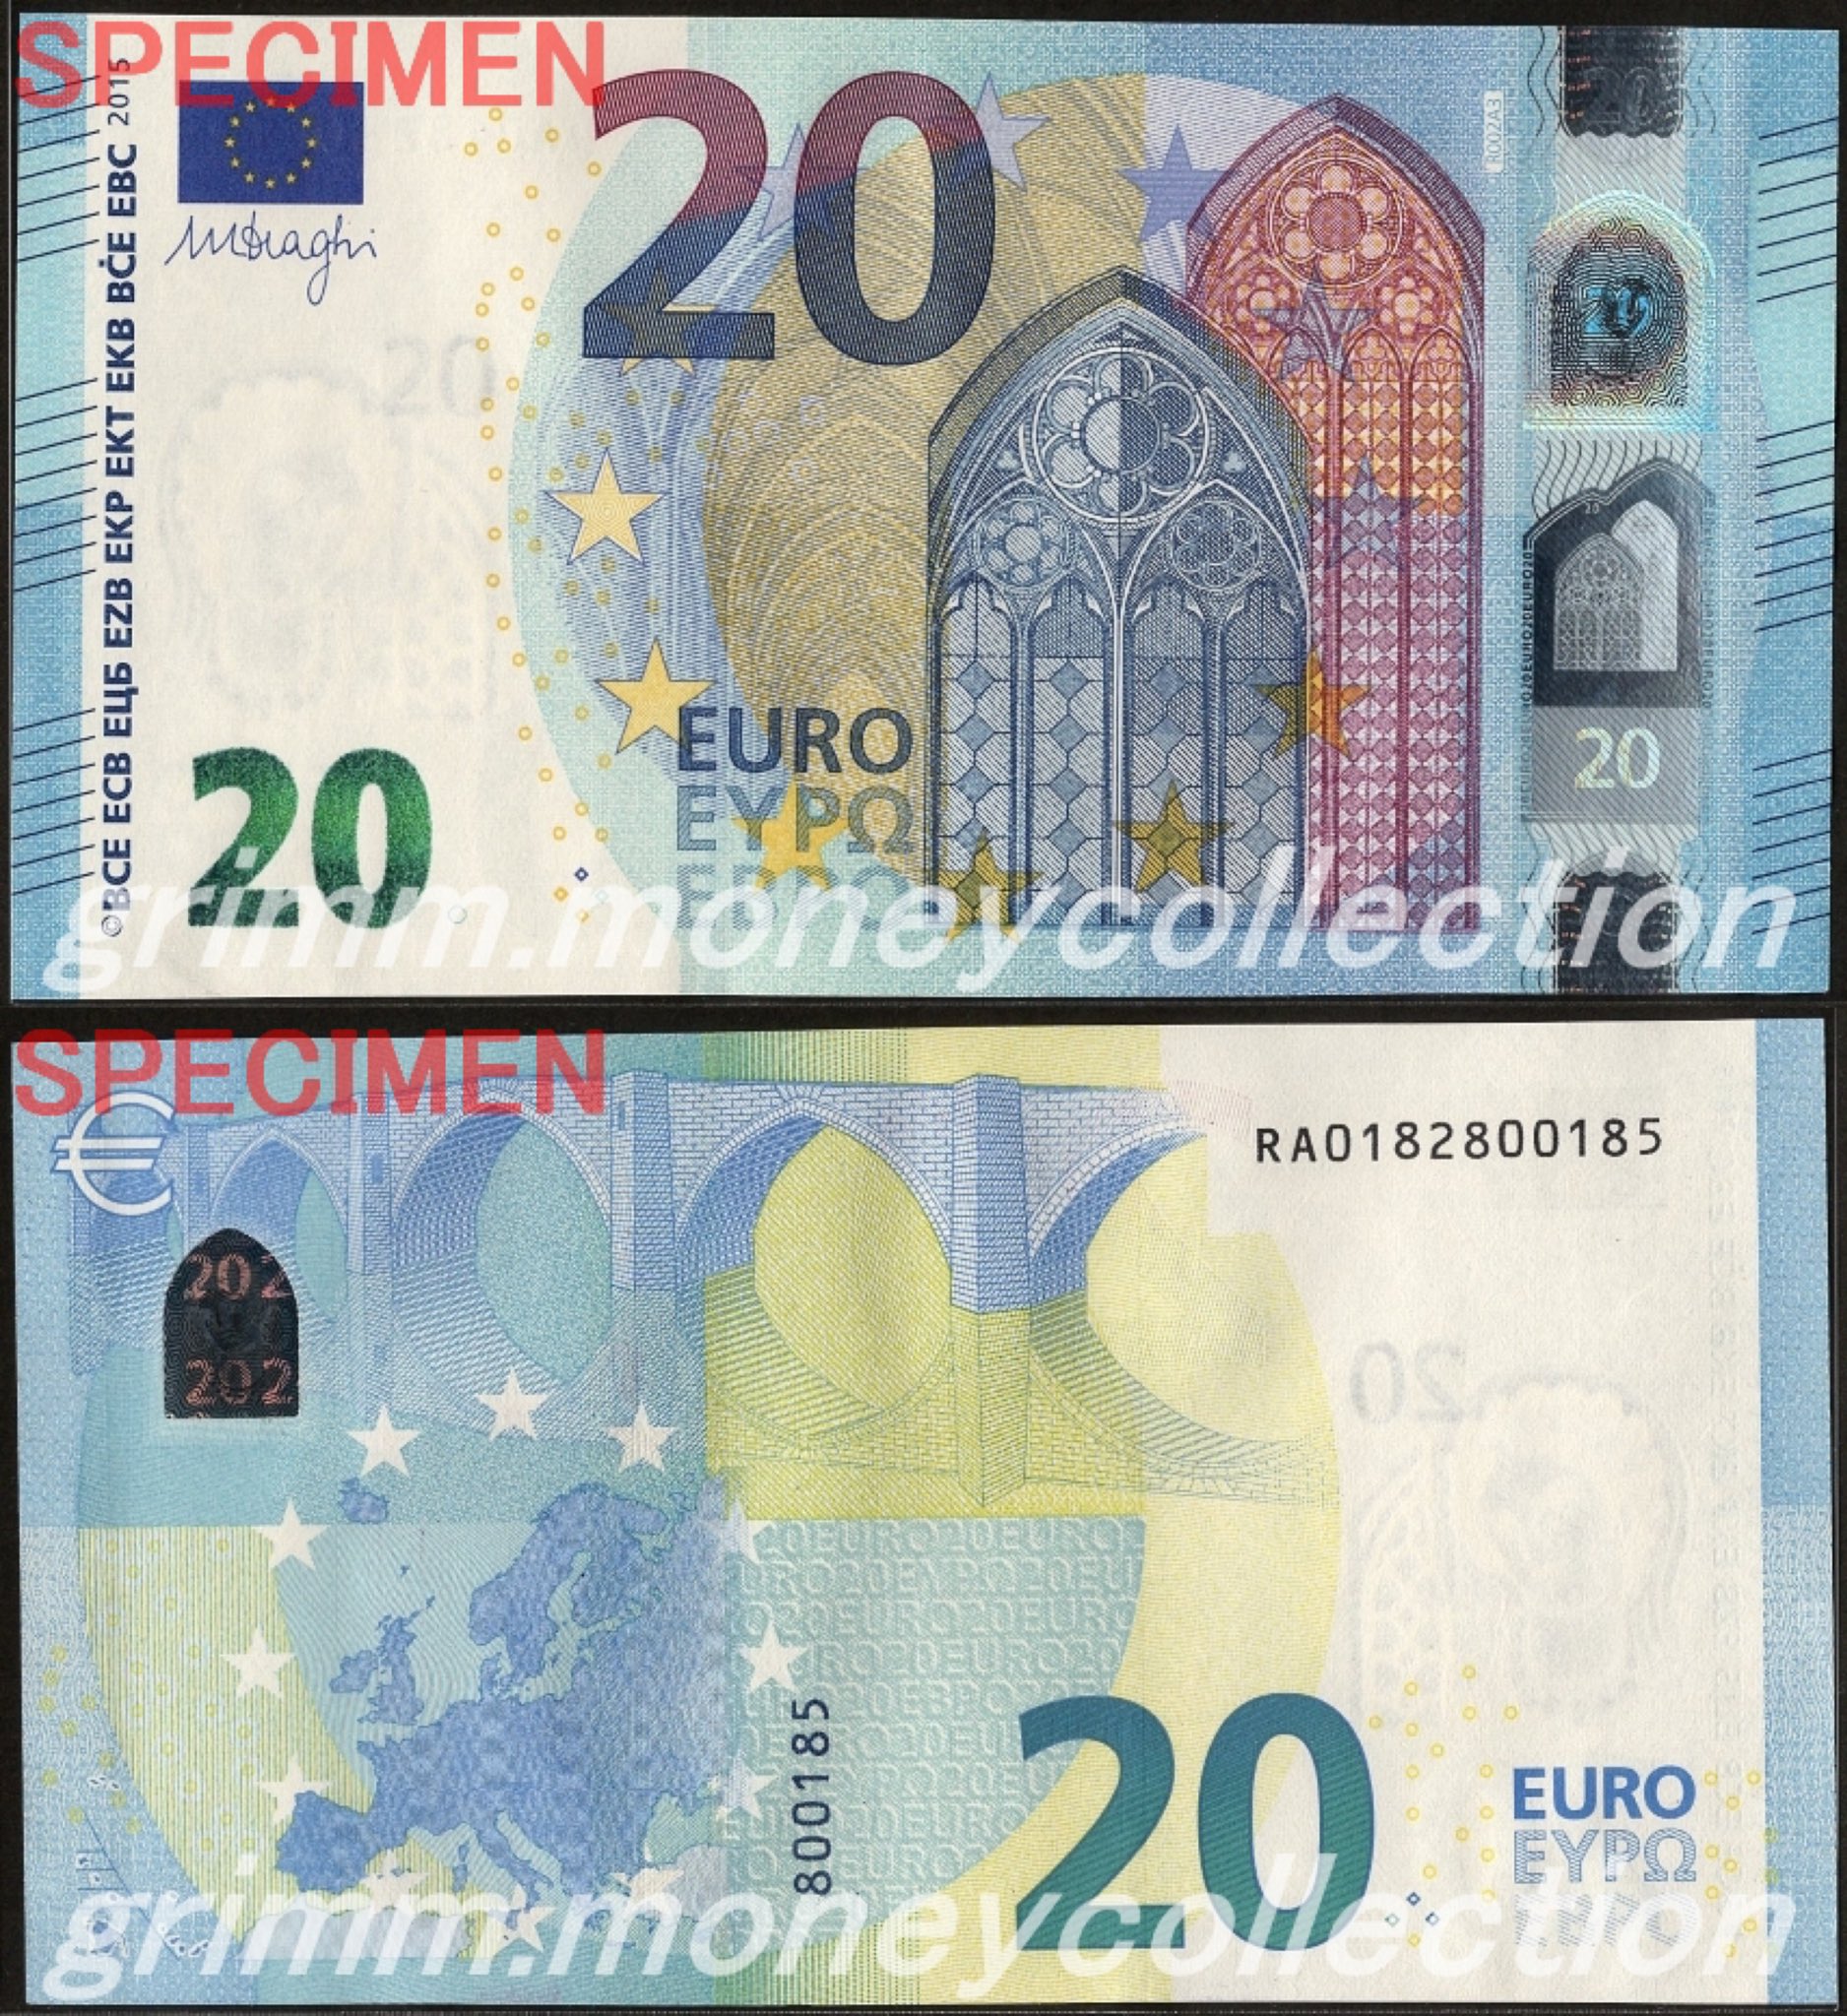 グリム 貨幣コレクション Eu ユーロ圏で15年に発行されたユーロ紙幣 表 ゴシック様式の架空の建物 裏 ゴシック様式の架空の橋 ヨーロッパの地図 紙幣コレクション 貨幣コレクション T Co Sdousexgme Twitter